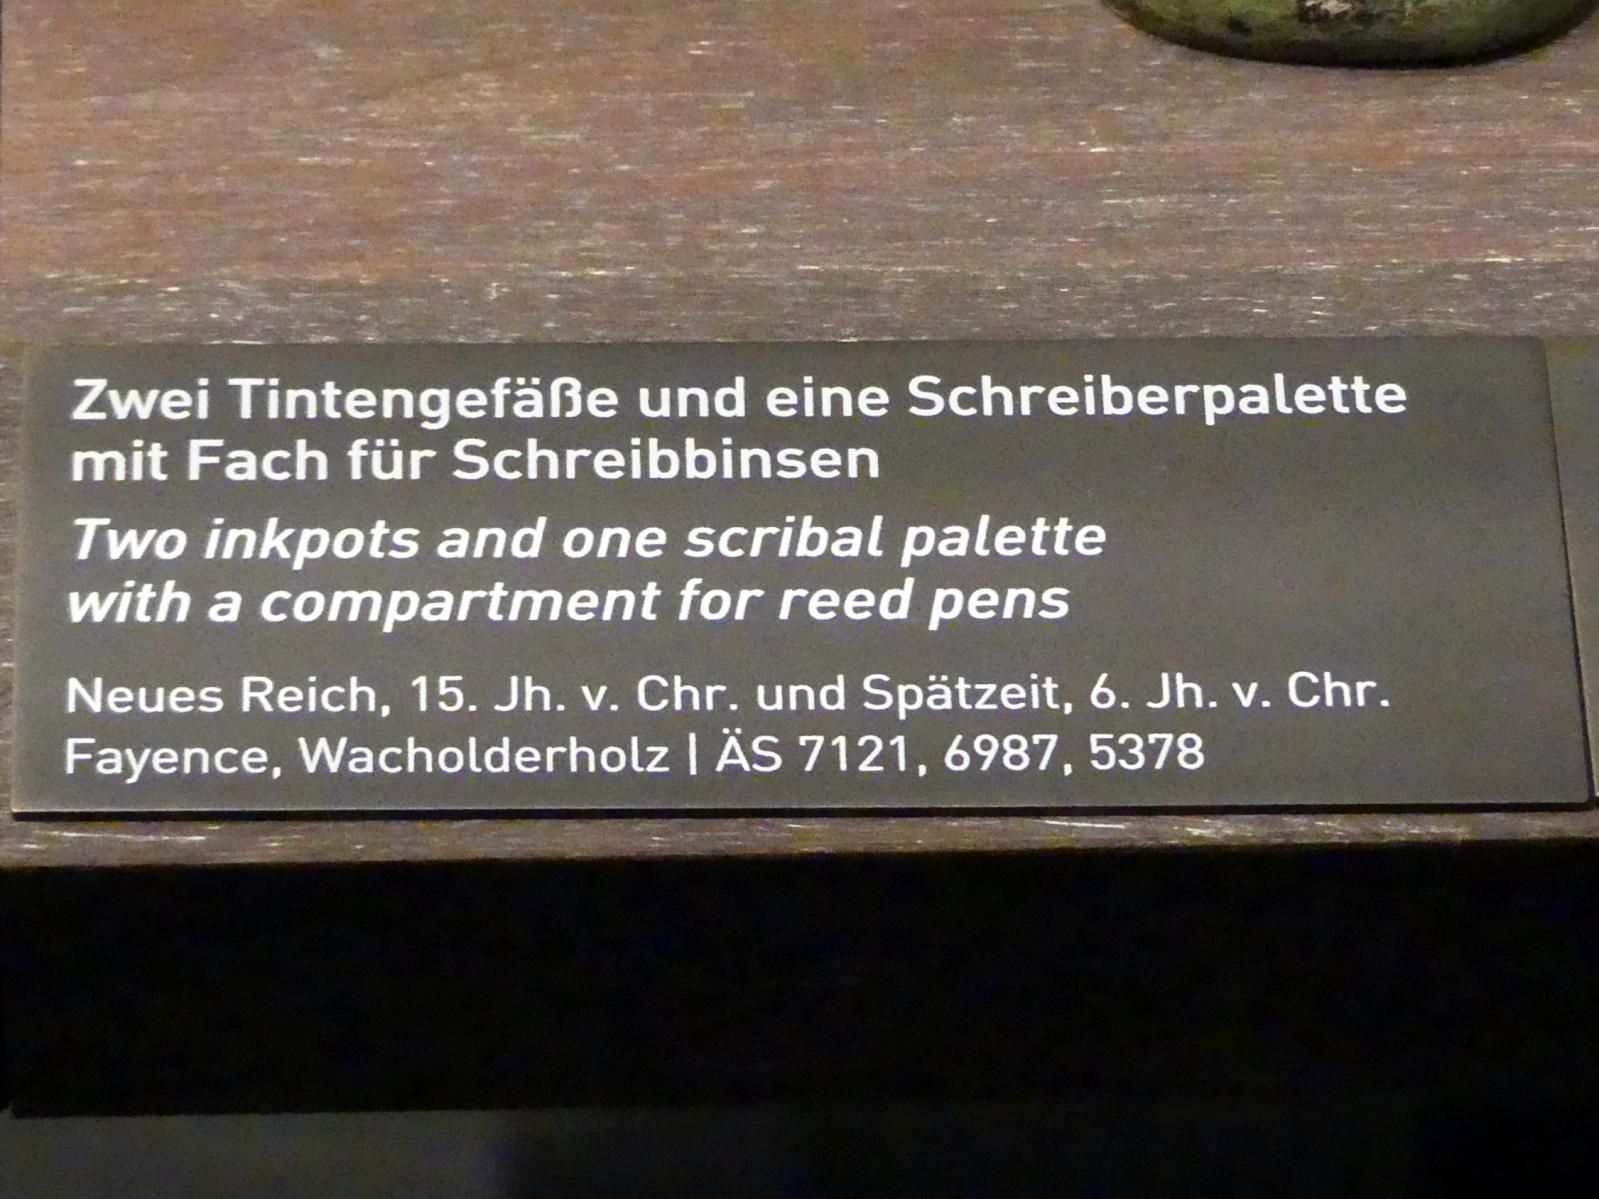 Schreiberpalette mit Fach für Schreibbinsen, Spätzeit, 360 - 342 v. Chr., 600 - 500 v. Chr., Bild 2/2